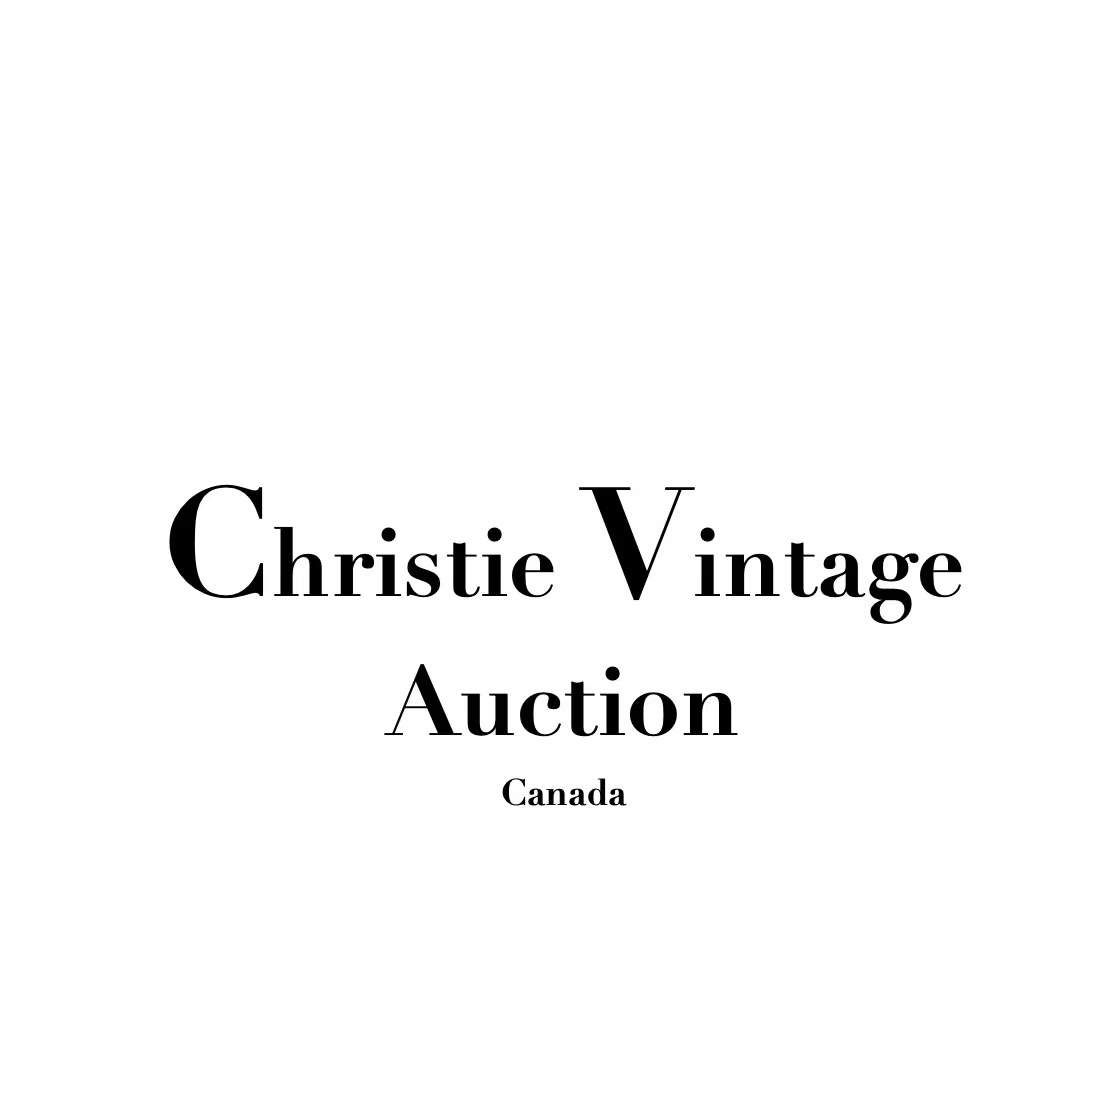 Christie Vintage Auction Company